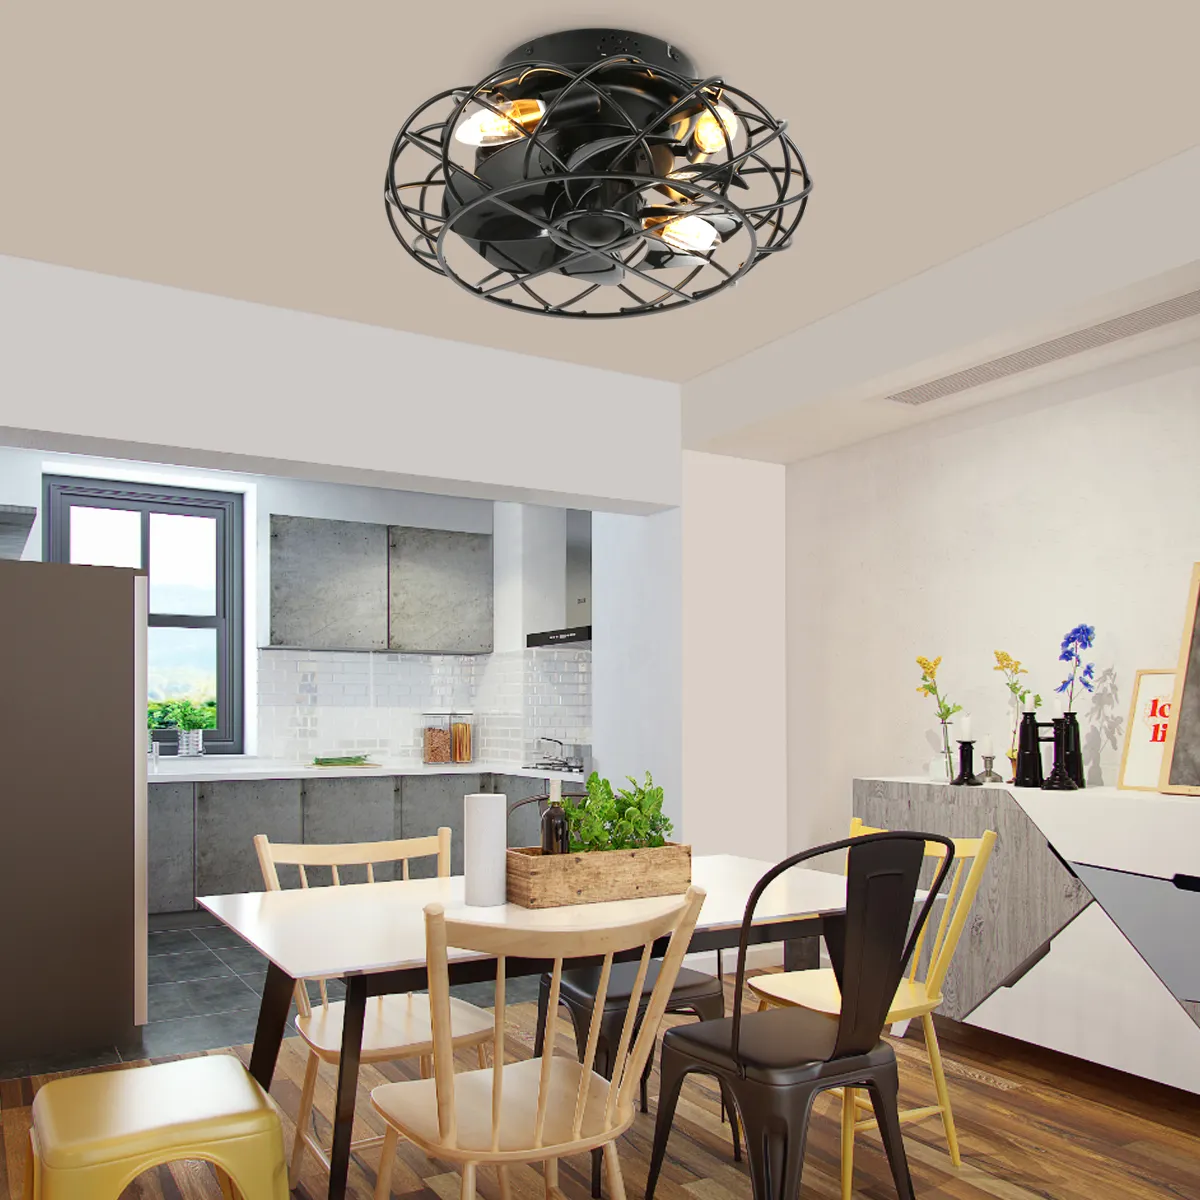 SLYNN Moderno App Control Casa Quarto Sala de estar Ventilador de teto LED inteligente 220V com luz e controle remoto